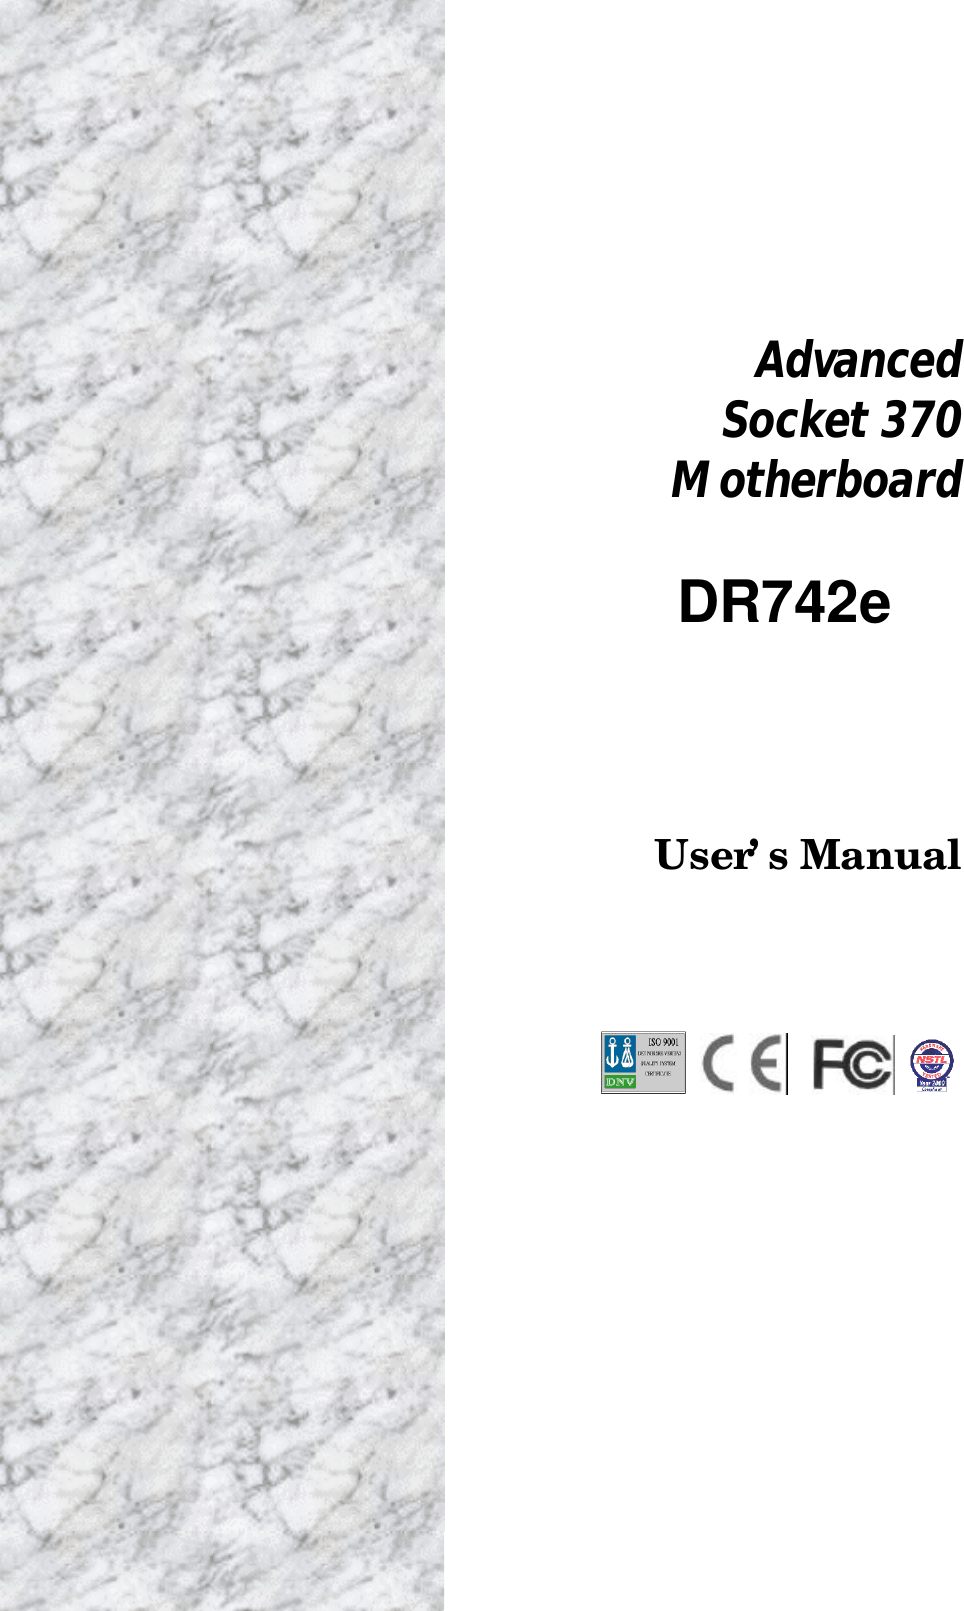 AdvancedSocket 370MotherboardDR742eUser’s Manual 